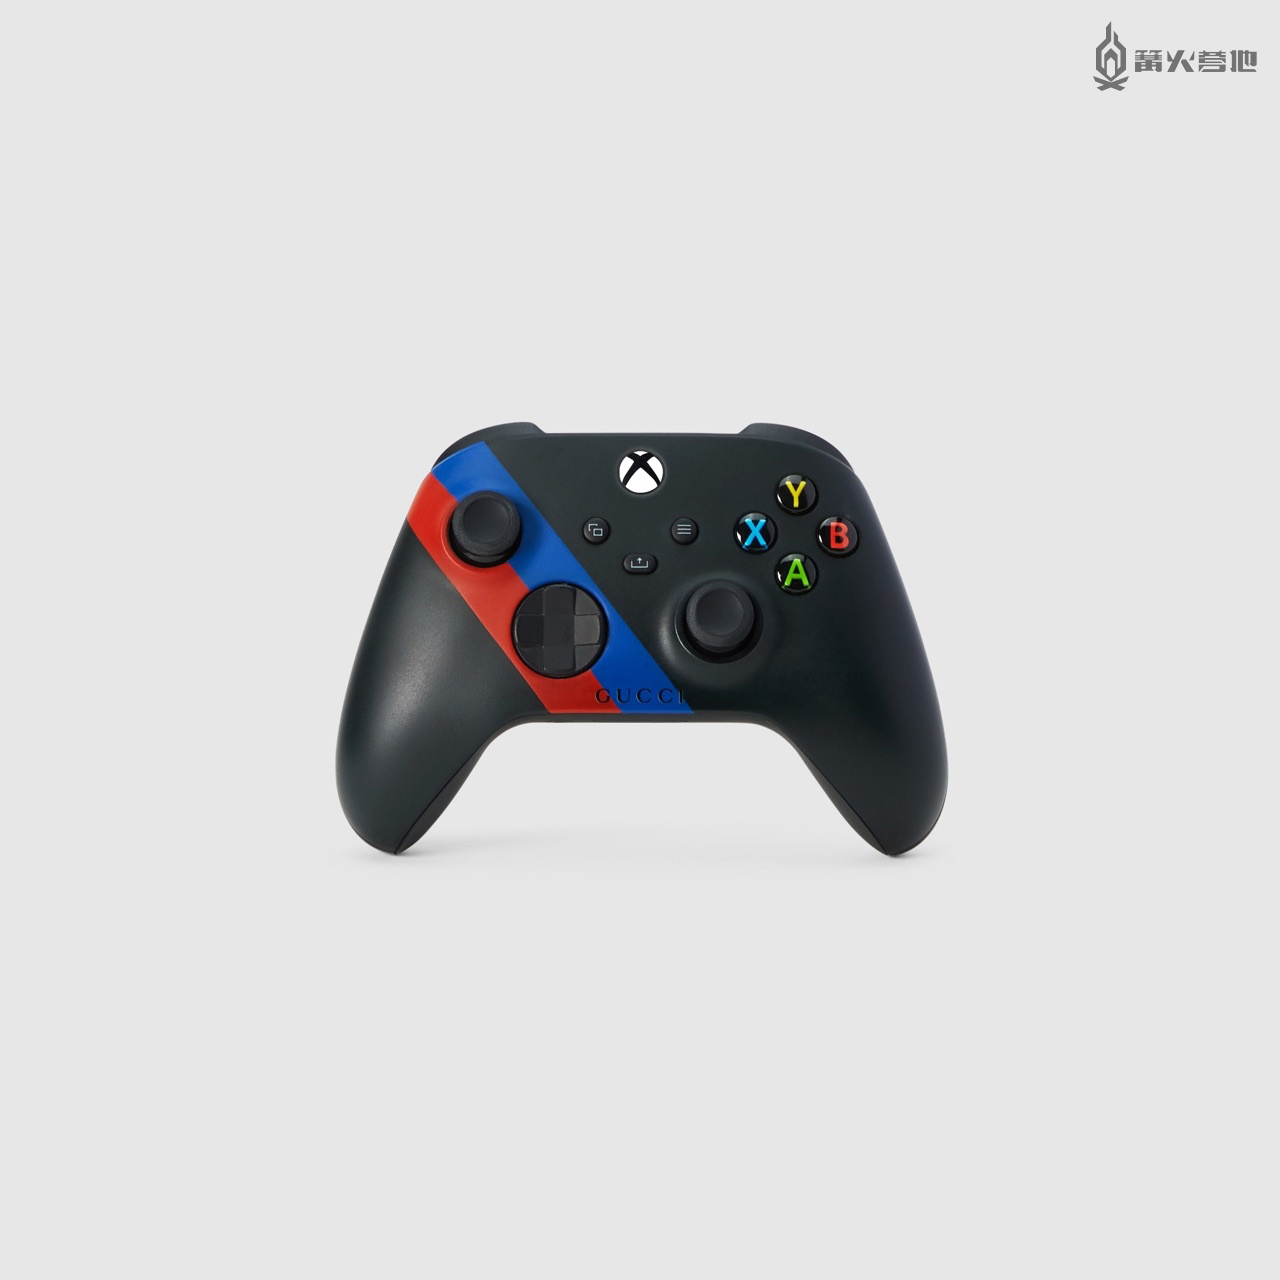 微软Xbox联合Gucci推出限量版周年纪念套装 11月17日发售